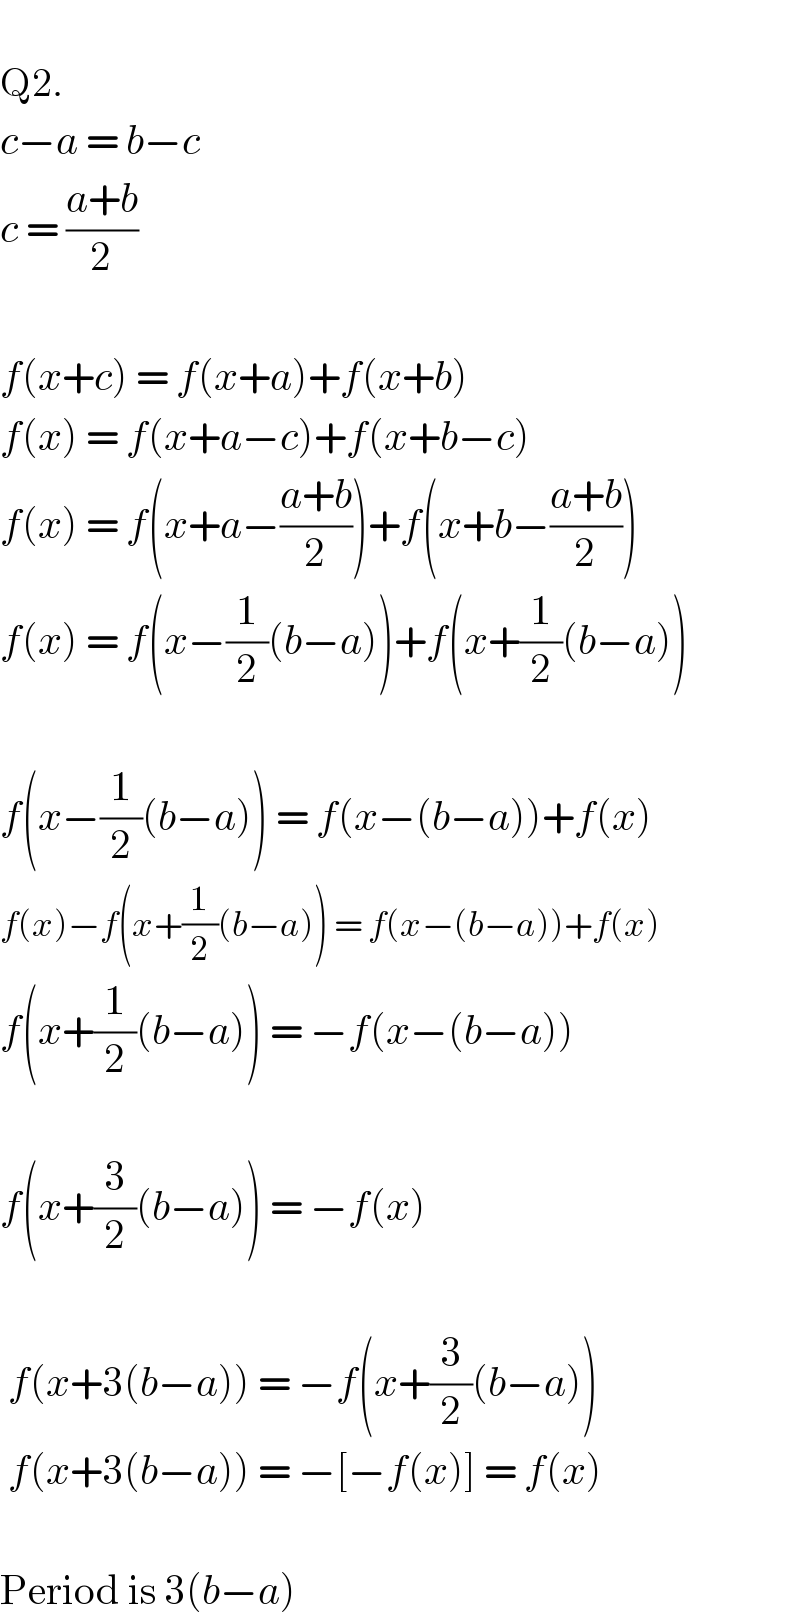   Q2.  c−a = b−c  c = ((a+b)/2)    f(x+c) = f(x+a)+f(x+b)  f(x) = f(x+a−c)+f(x+b−c)  f(x) = f(x+a−((a+b)/2))+f(x+b−((a+b)/2))  f(x) = f(x−(1/2)(b−a))+f(x+(1/2)(b−a))    f(x−(1/2)(b−a)) = f(x−(b−a))+f(x)  f(x)−f(x+(1/2)(b−a)) = f(x−(b−a))+f(x)  f(x+(1/2)(b−a)) = −f(x−(b−a))    f(x+(3/2)(b−a)) = −f(x)     f(x+3(b−a)) = −f(x+(3/2)(b−a))   f(x+3(b−a)) = −[−f(x)] = f(x)    Period is 3(b−a)  